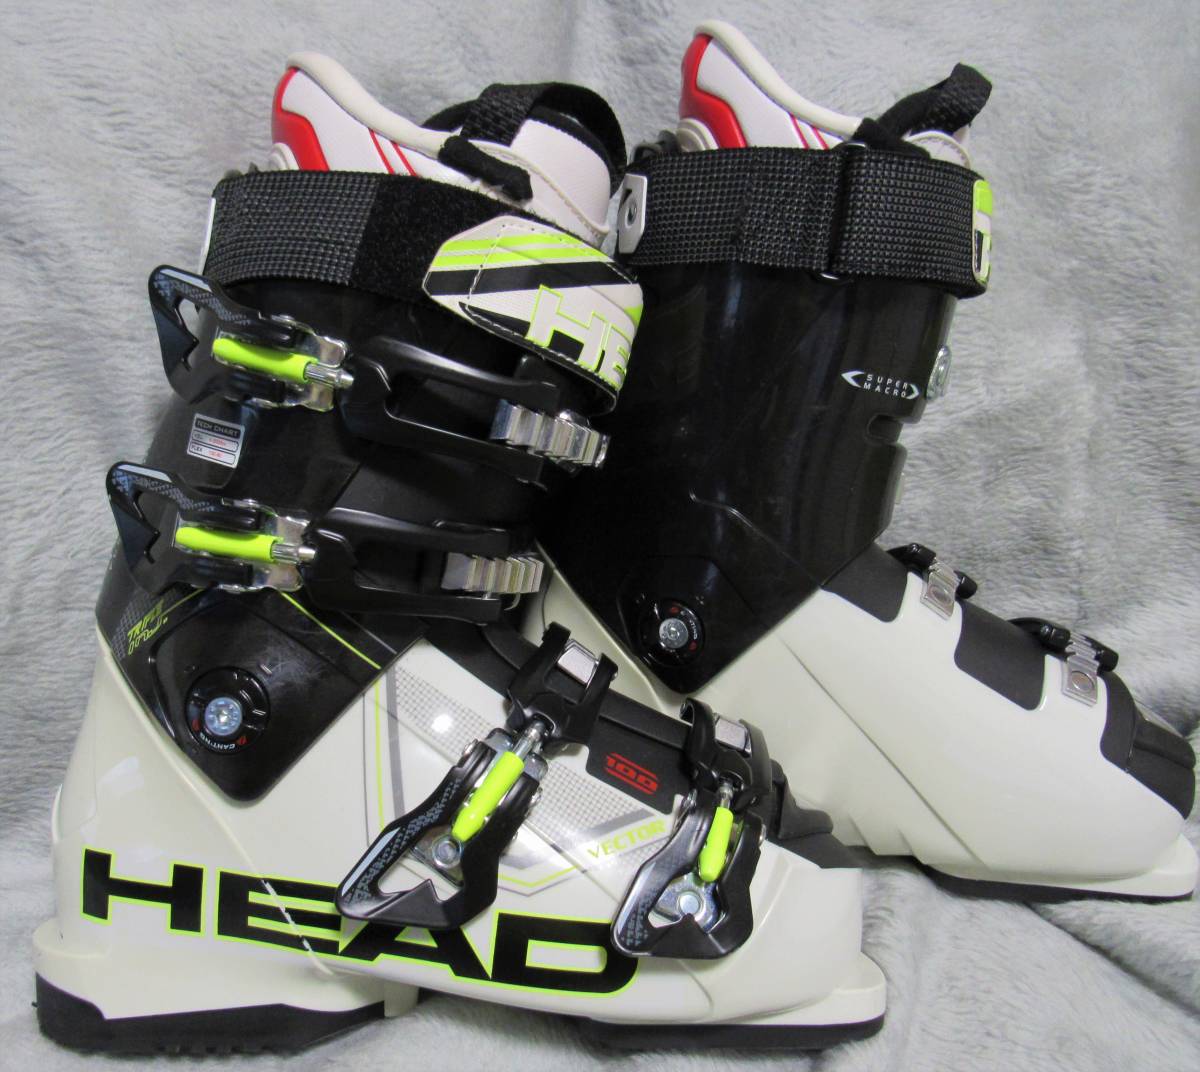 通販でクリスマス HEAD VECTOR 26.5cm ヘッド スキーブーツ 105 - ブーツ(男性用) - alrc.asia